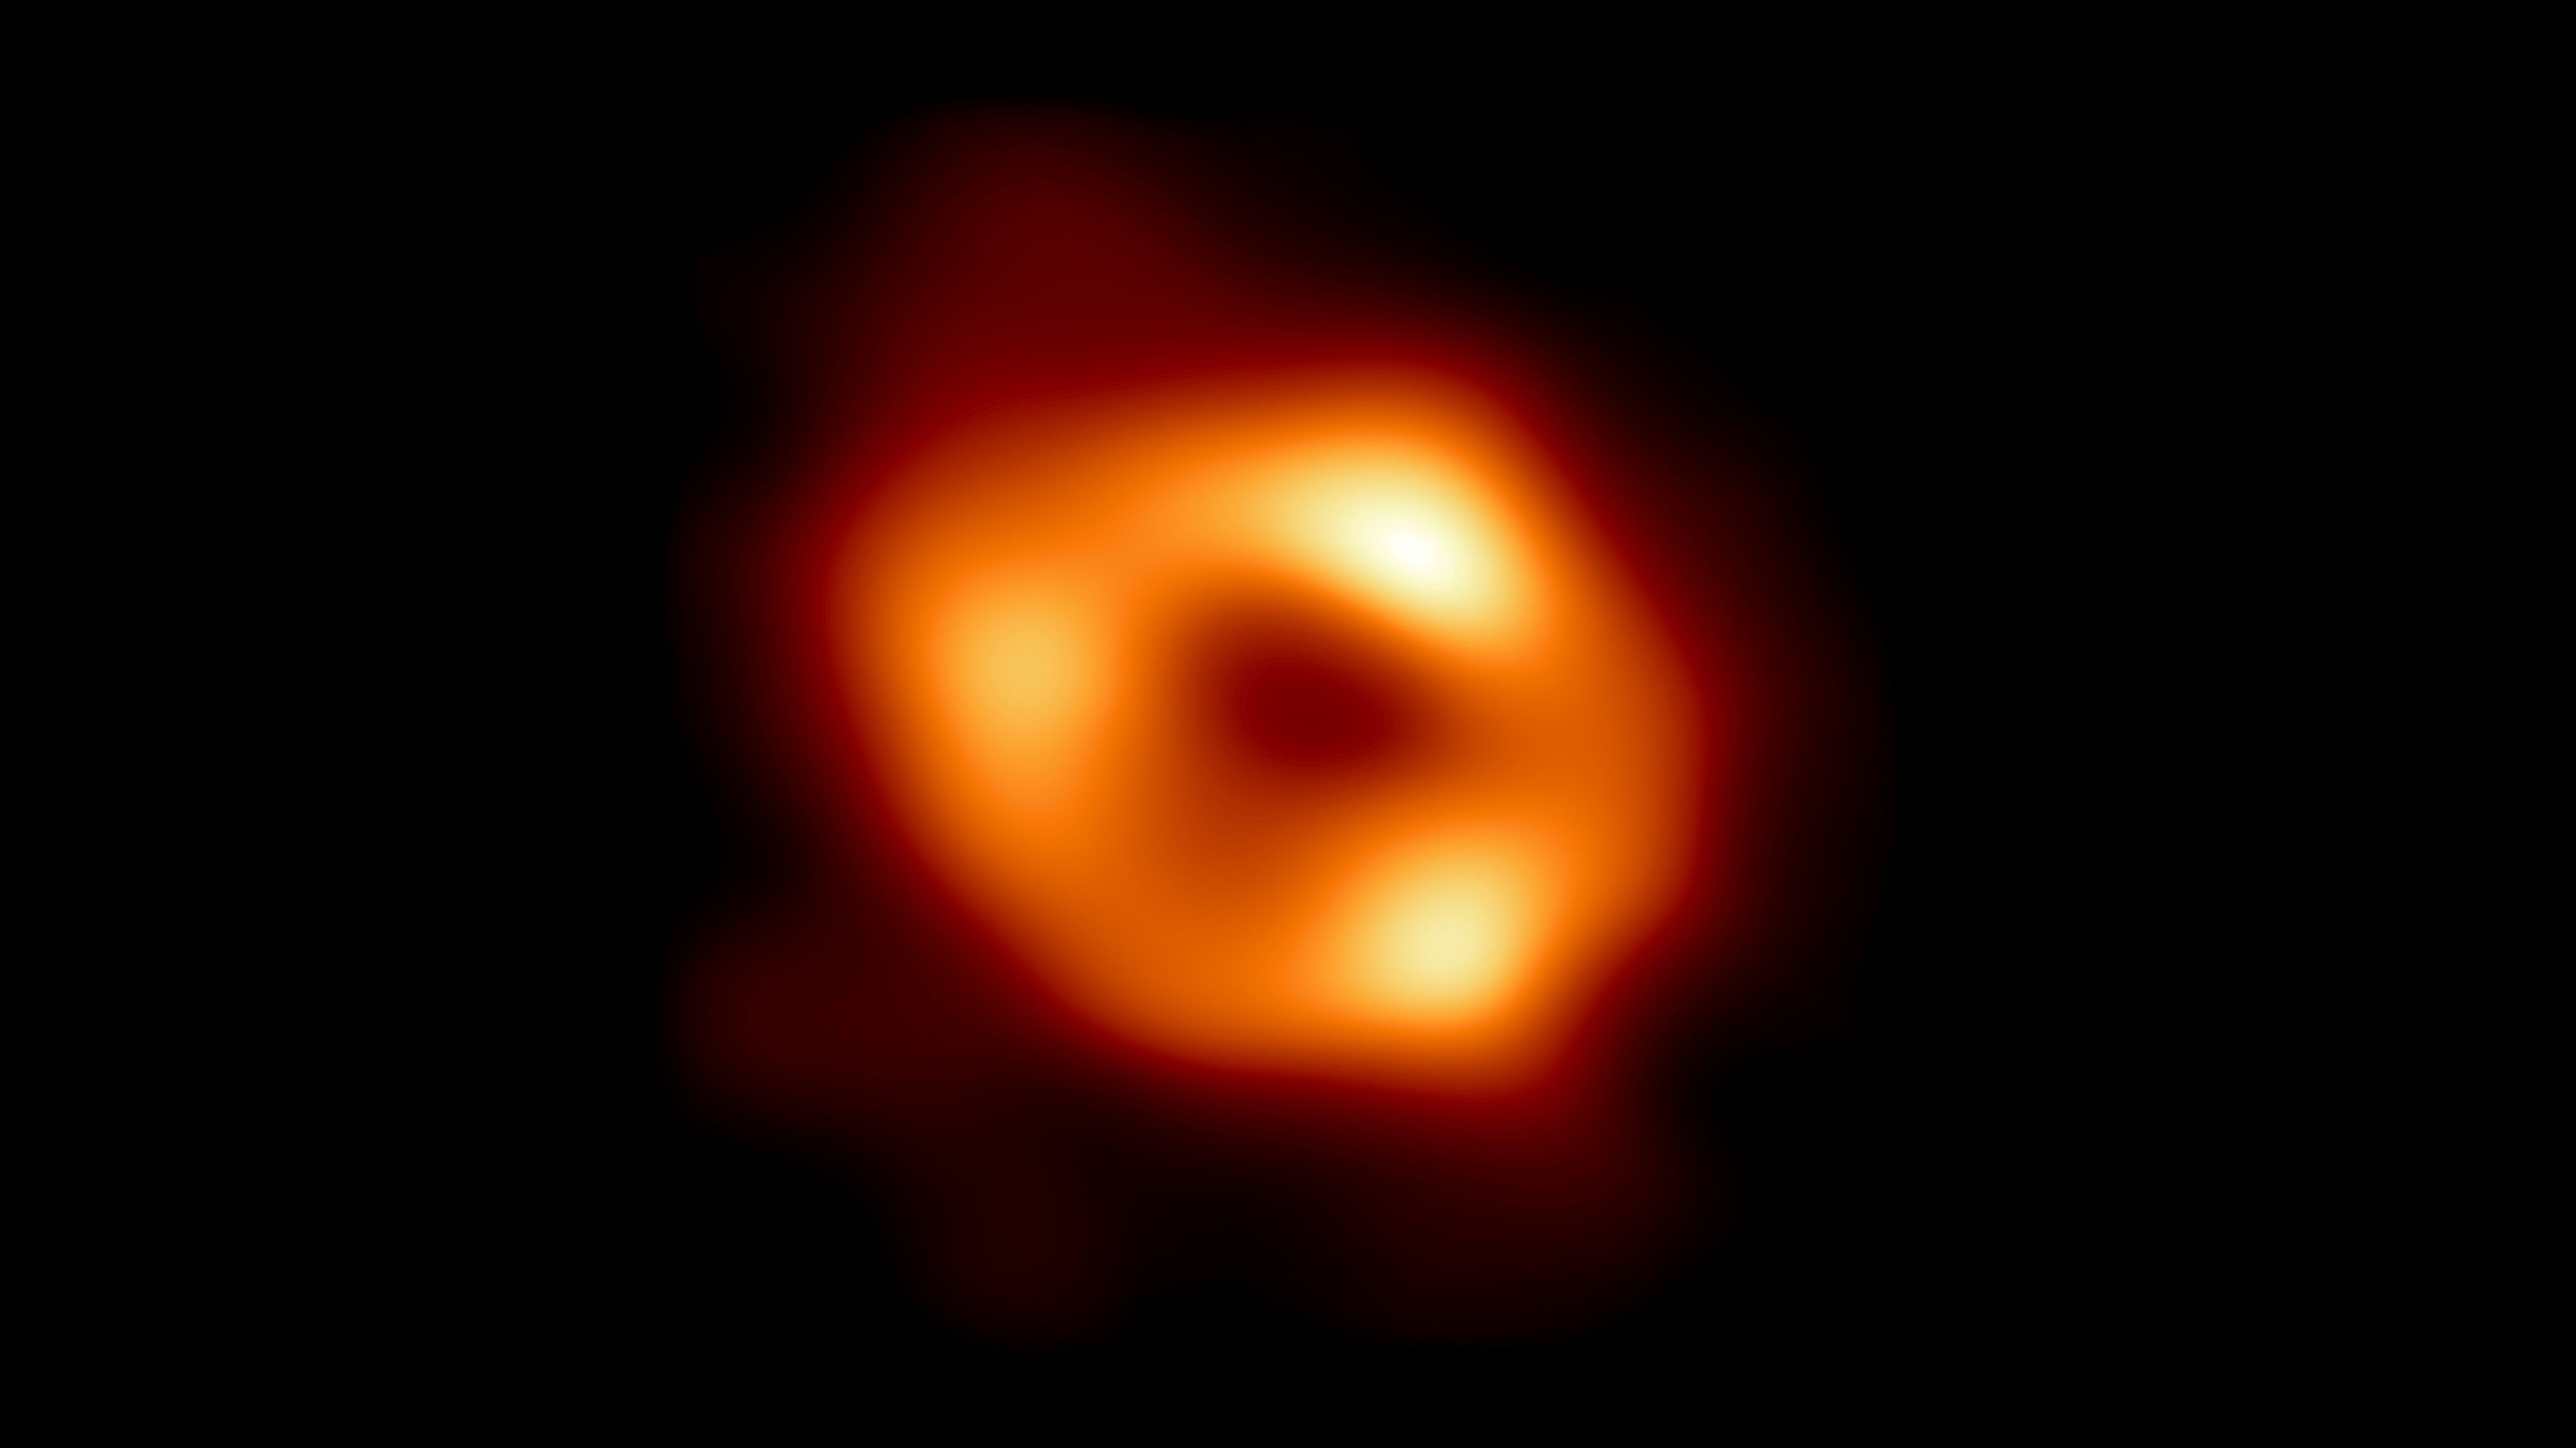 Los científicos desvelan una imagen de un enorme agujero negro en el centro de la Vía Láctea